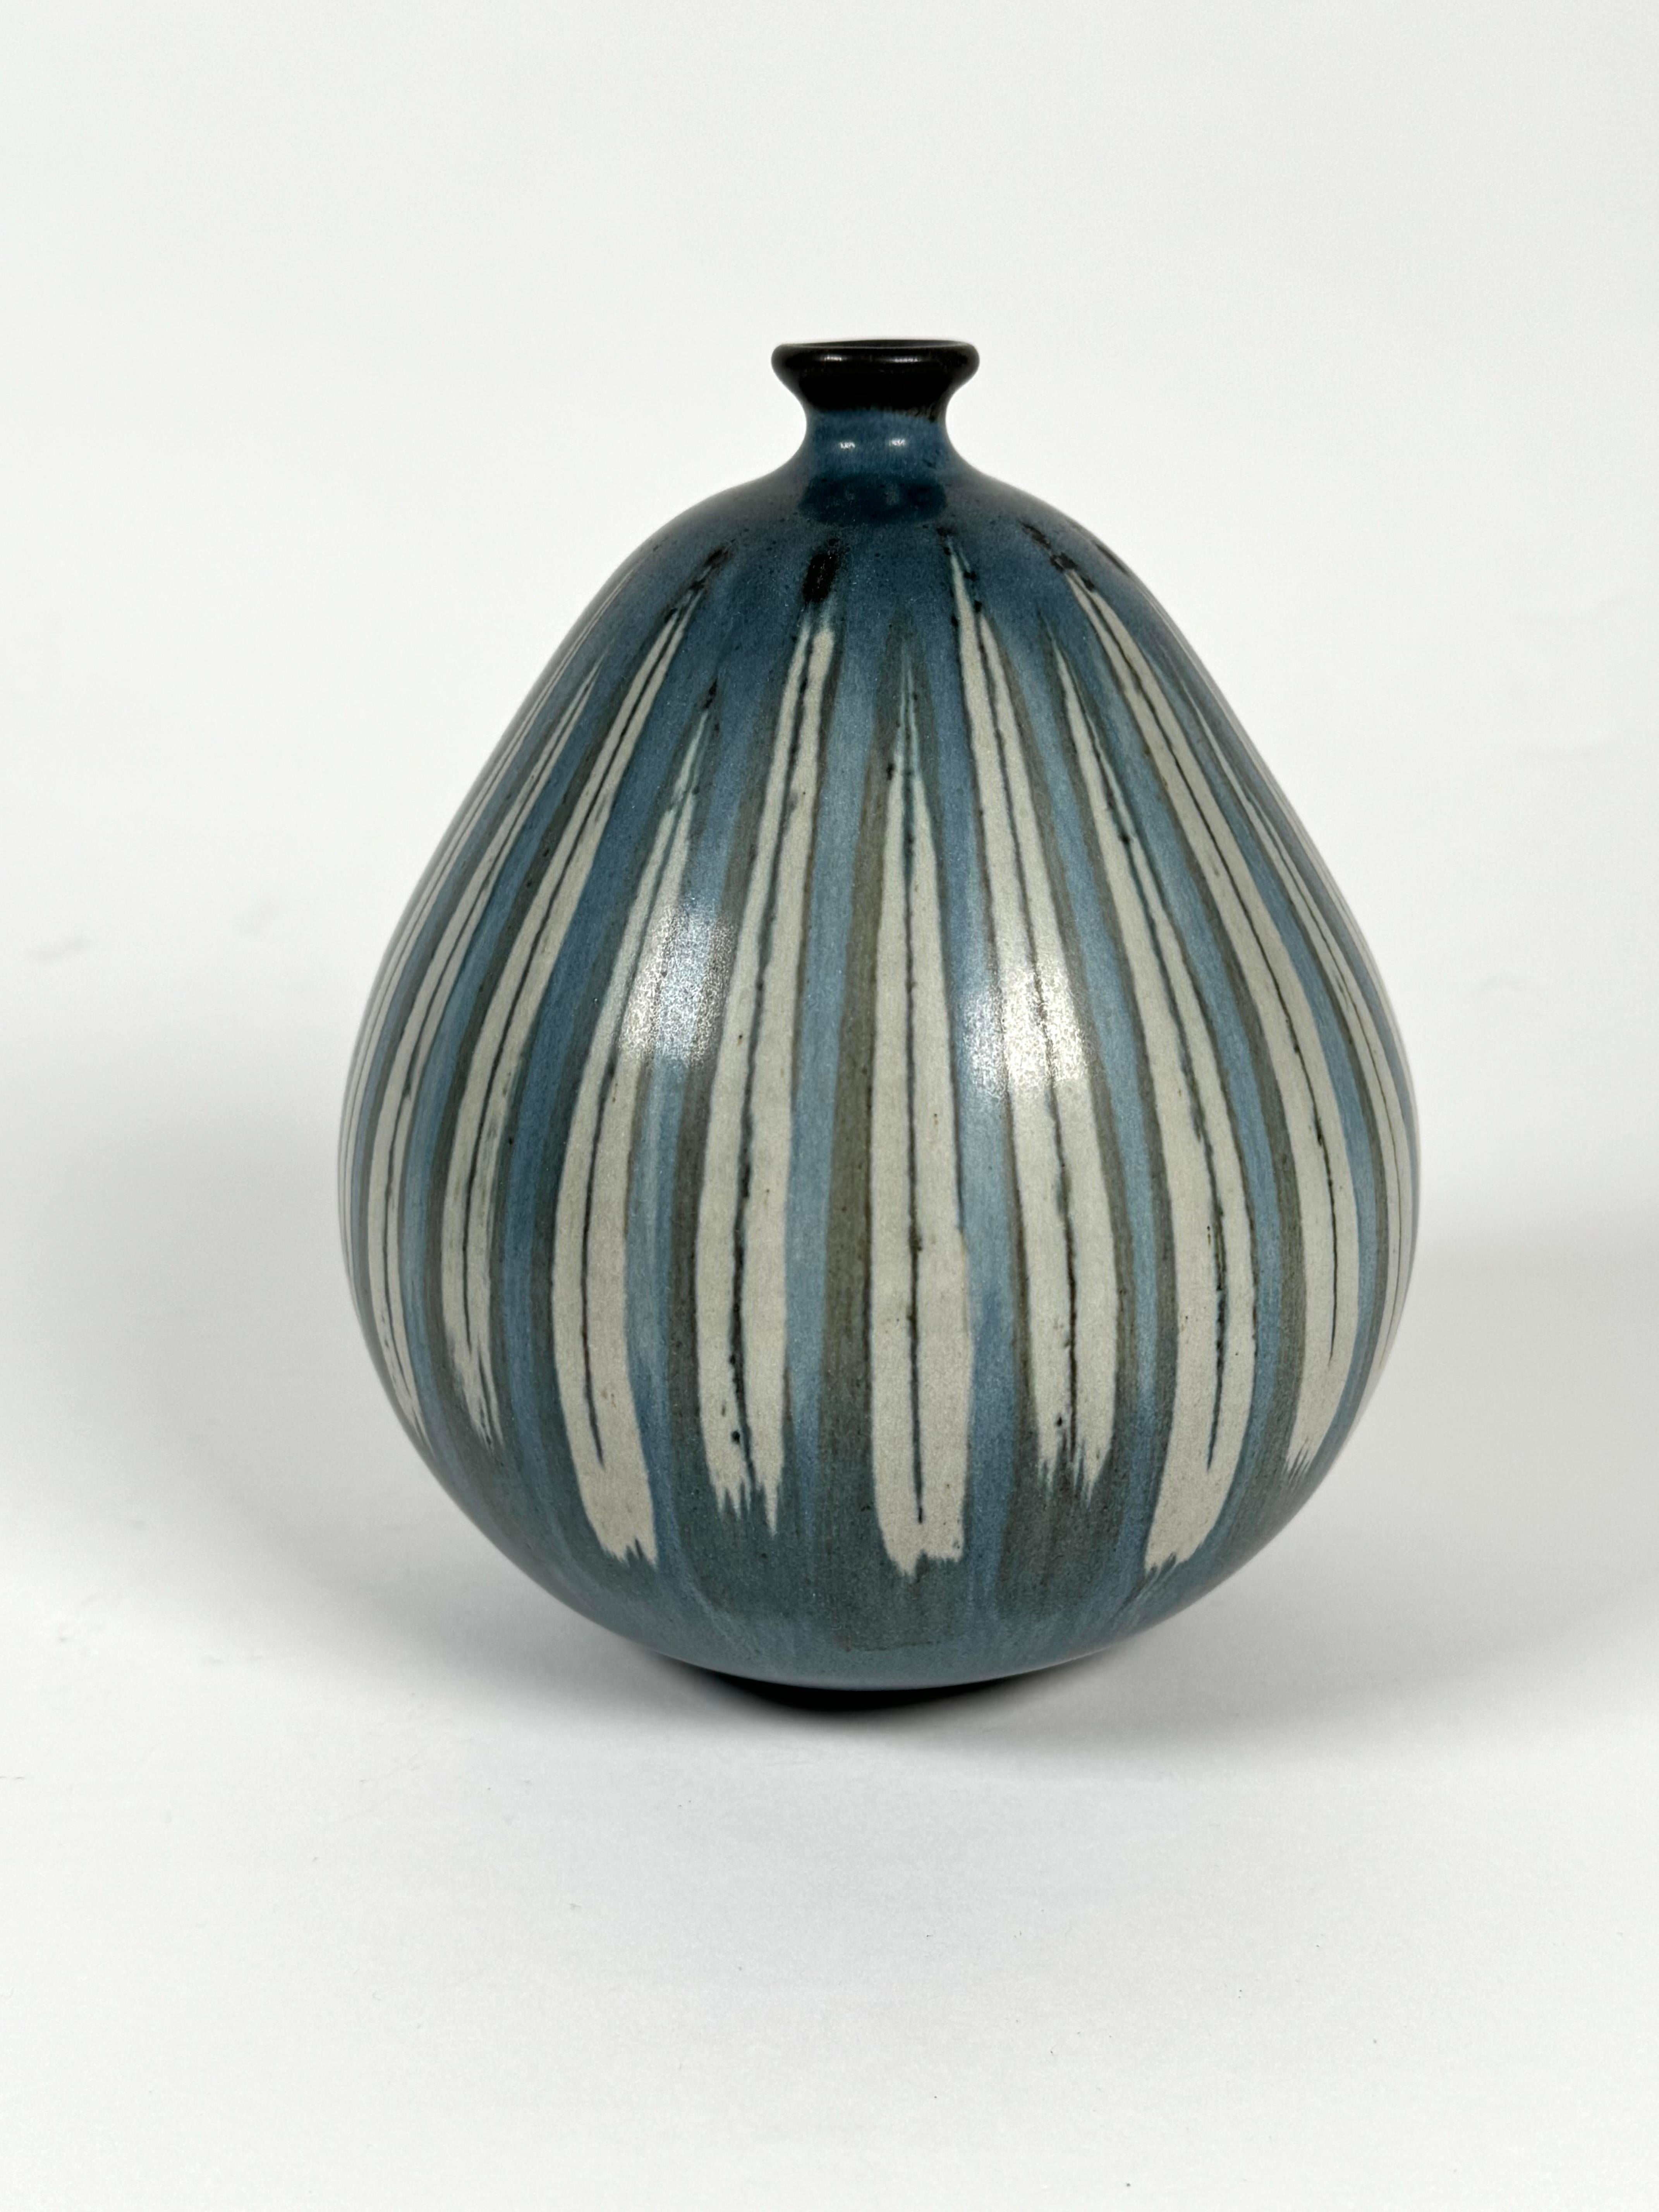 Der kalifornische Studio-Keramikkünstler Rupert Deese (1924-2010). Zwiebelförmige Keramikvase in Blautönen mit gestreiften, gemusterten Glasurverzierungen. Deese war ein bekannter Keramiker, der im Laufe seiner Karriere zahlreiche Auszeichnungen